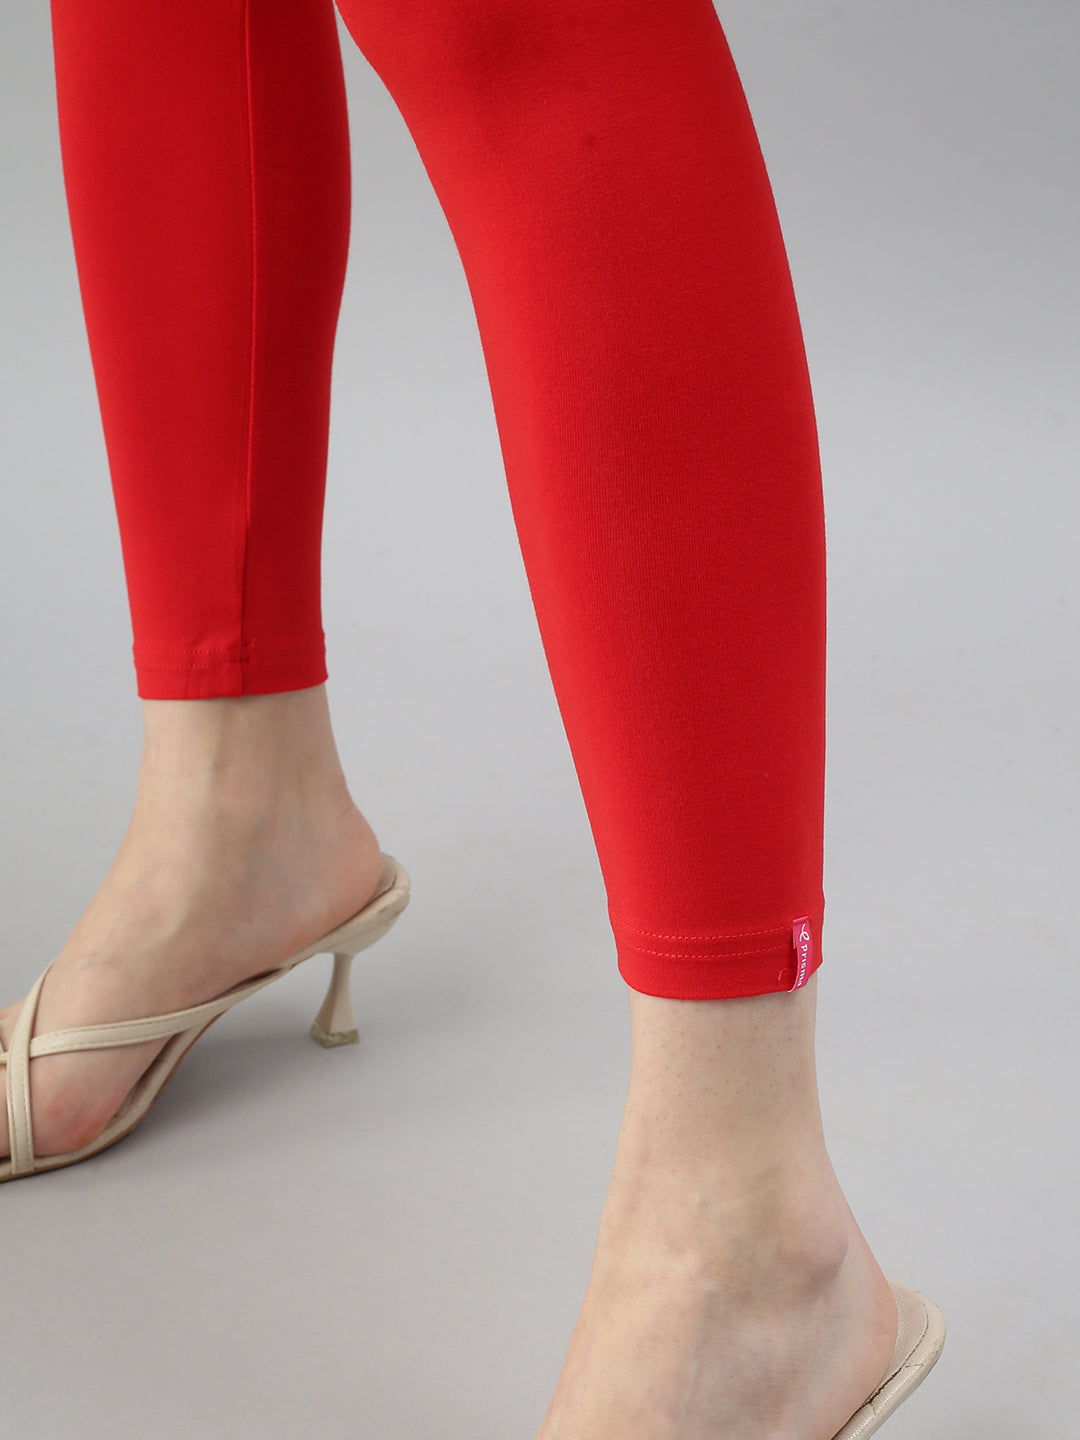 Shimmer Leggings | Ankle Length & Churidar Styles | Prisma Garments